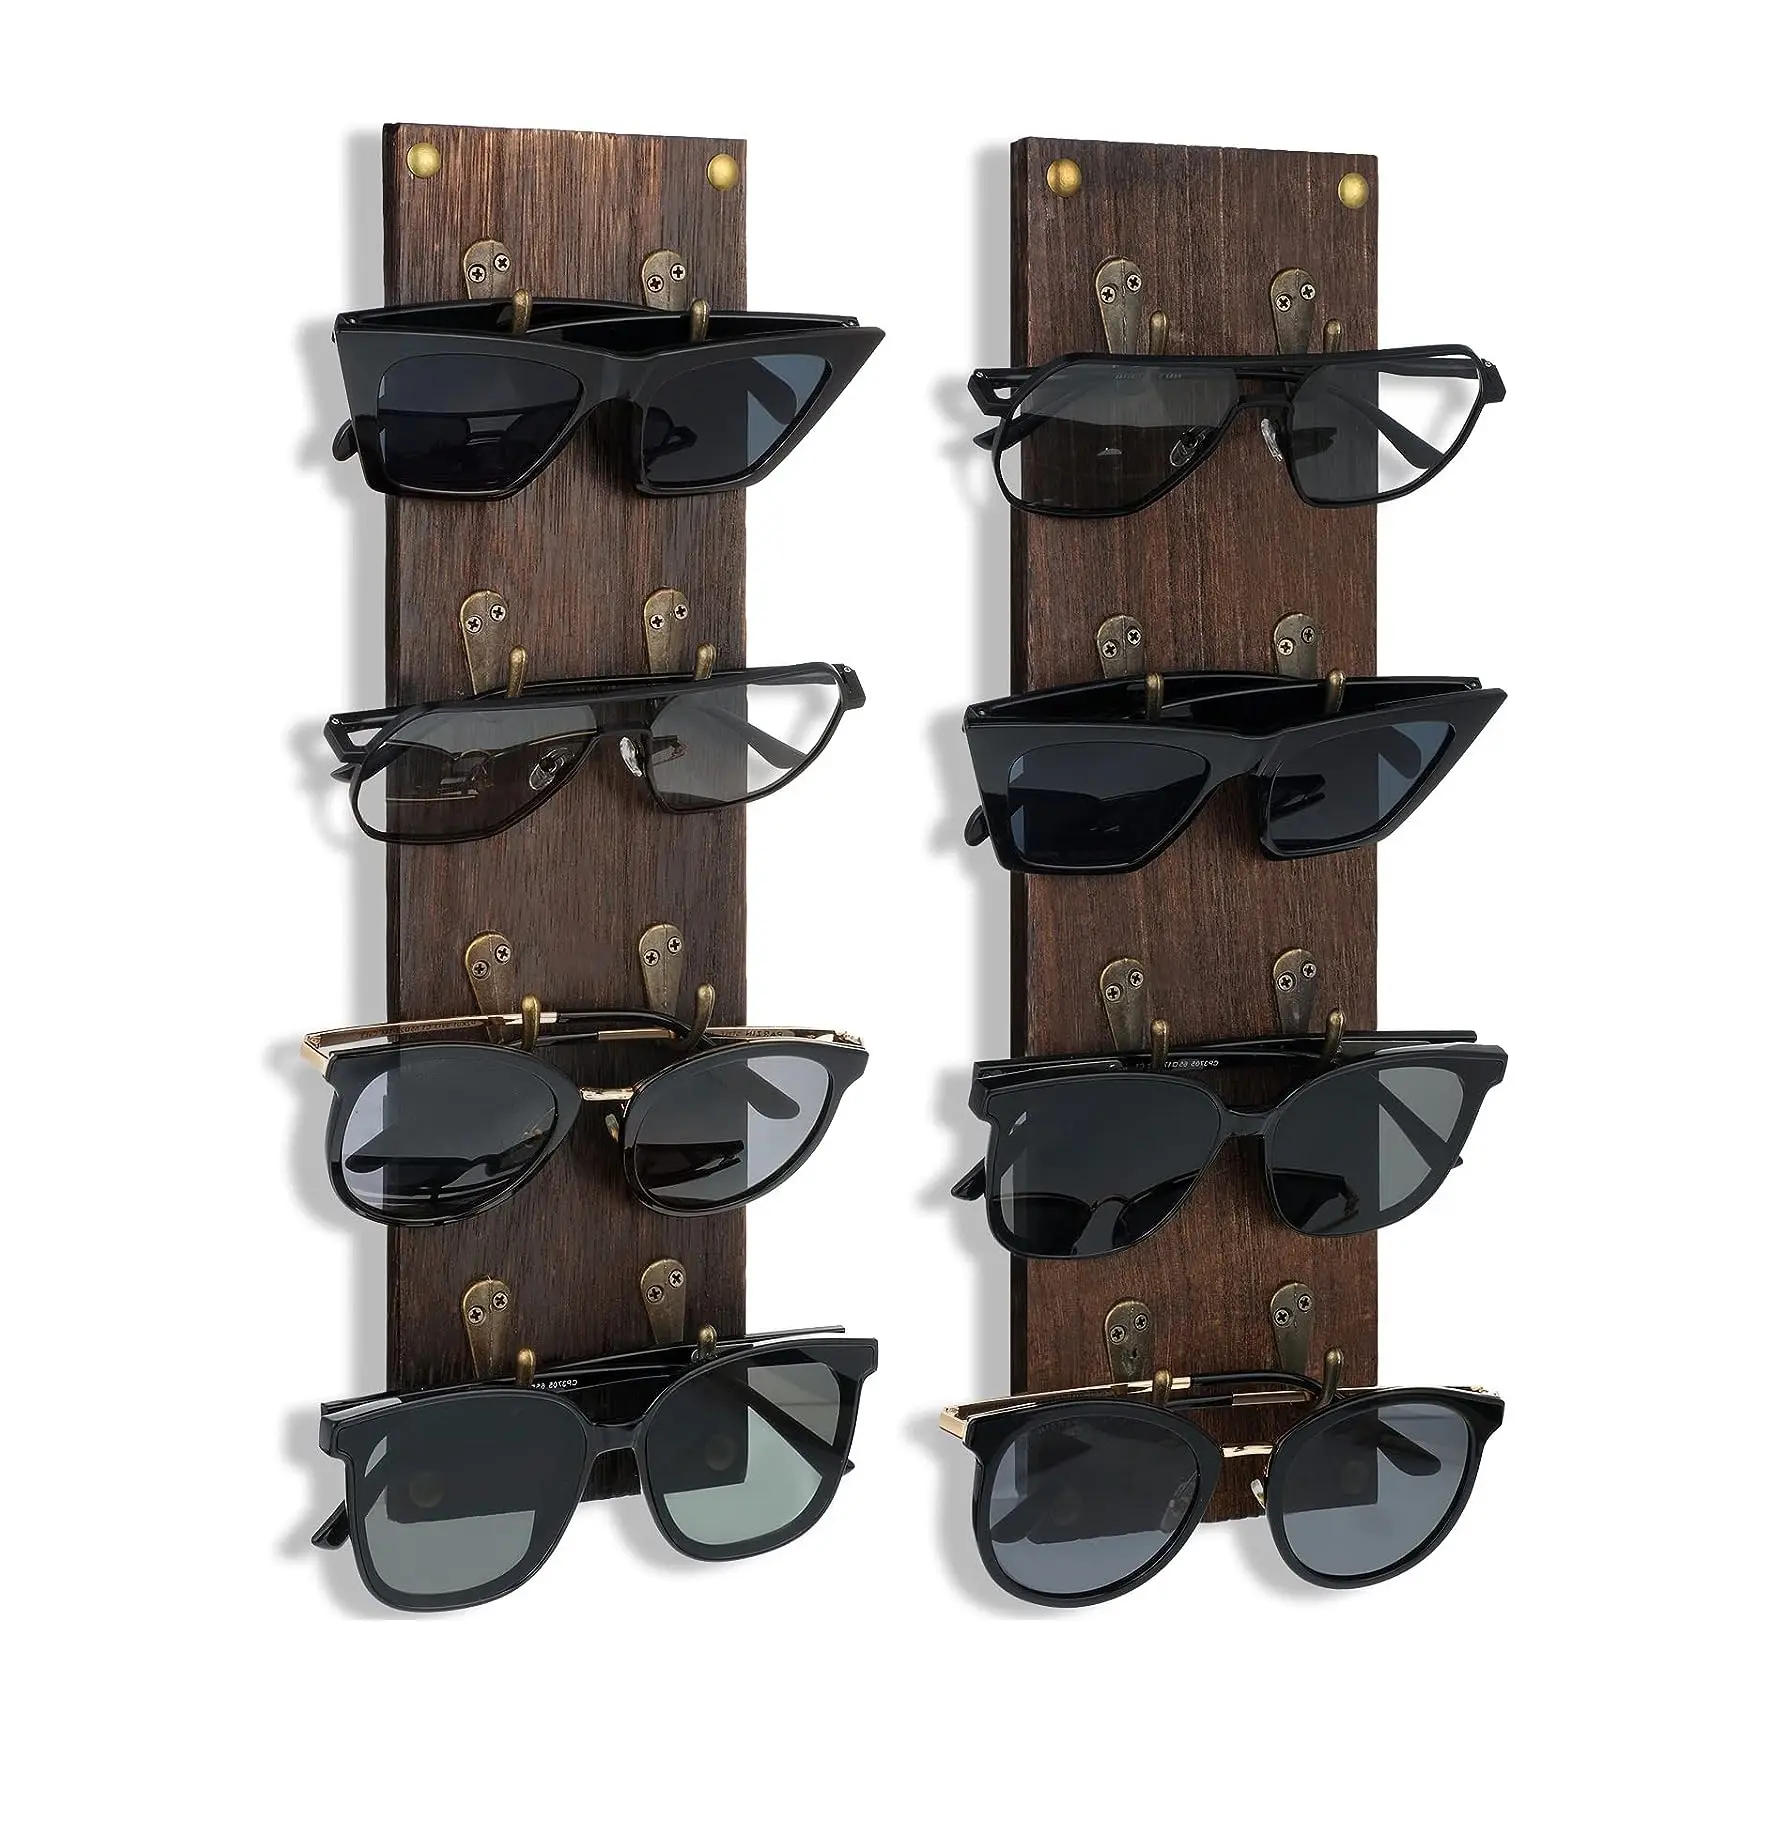 Juego de 2 gafas de sol rústicas montadas, organizador de almacenamiento, soporte de madera para gafas de sol, estante de exhibición de gafas con Metal